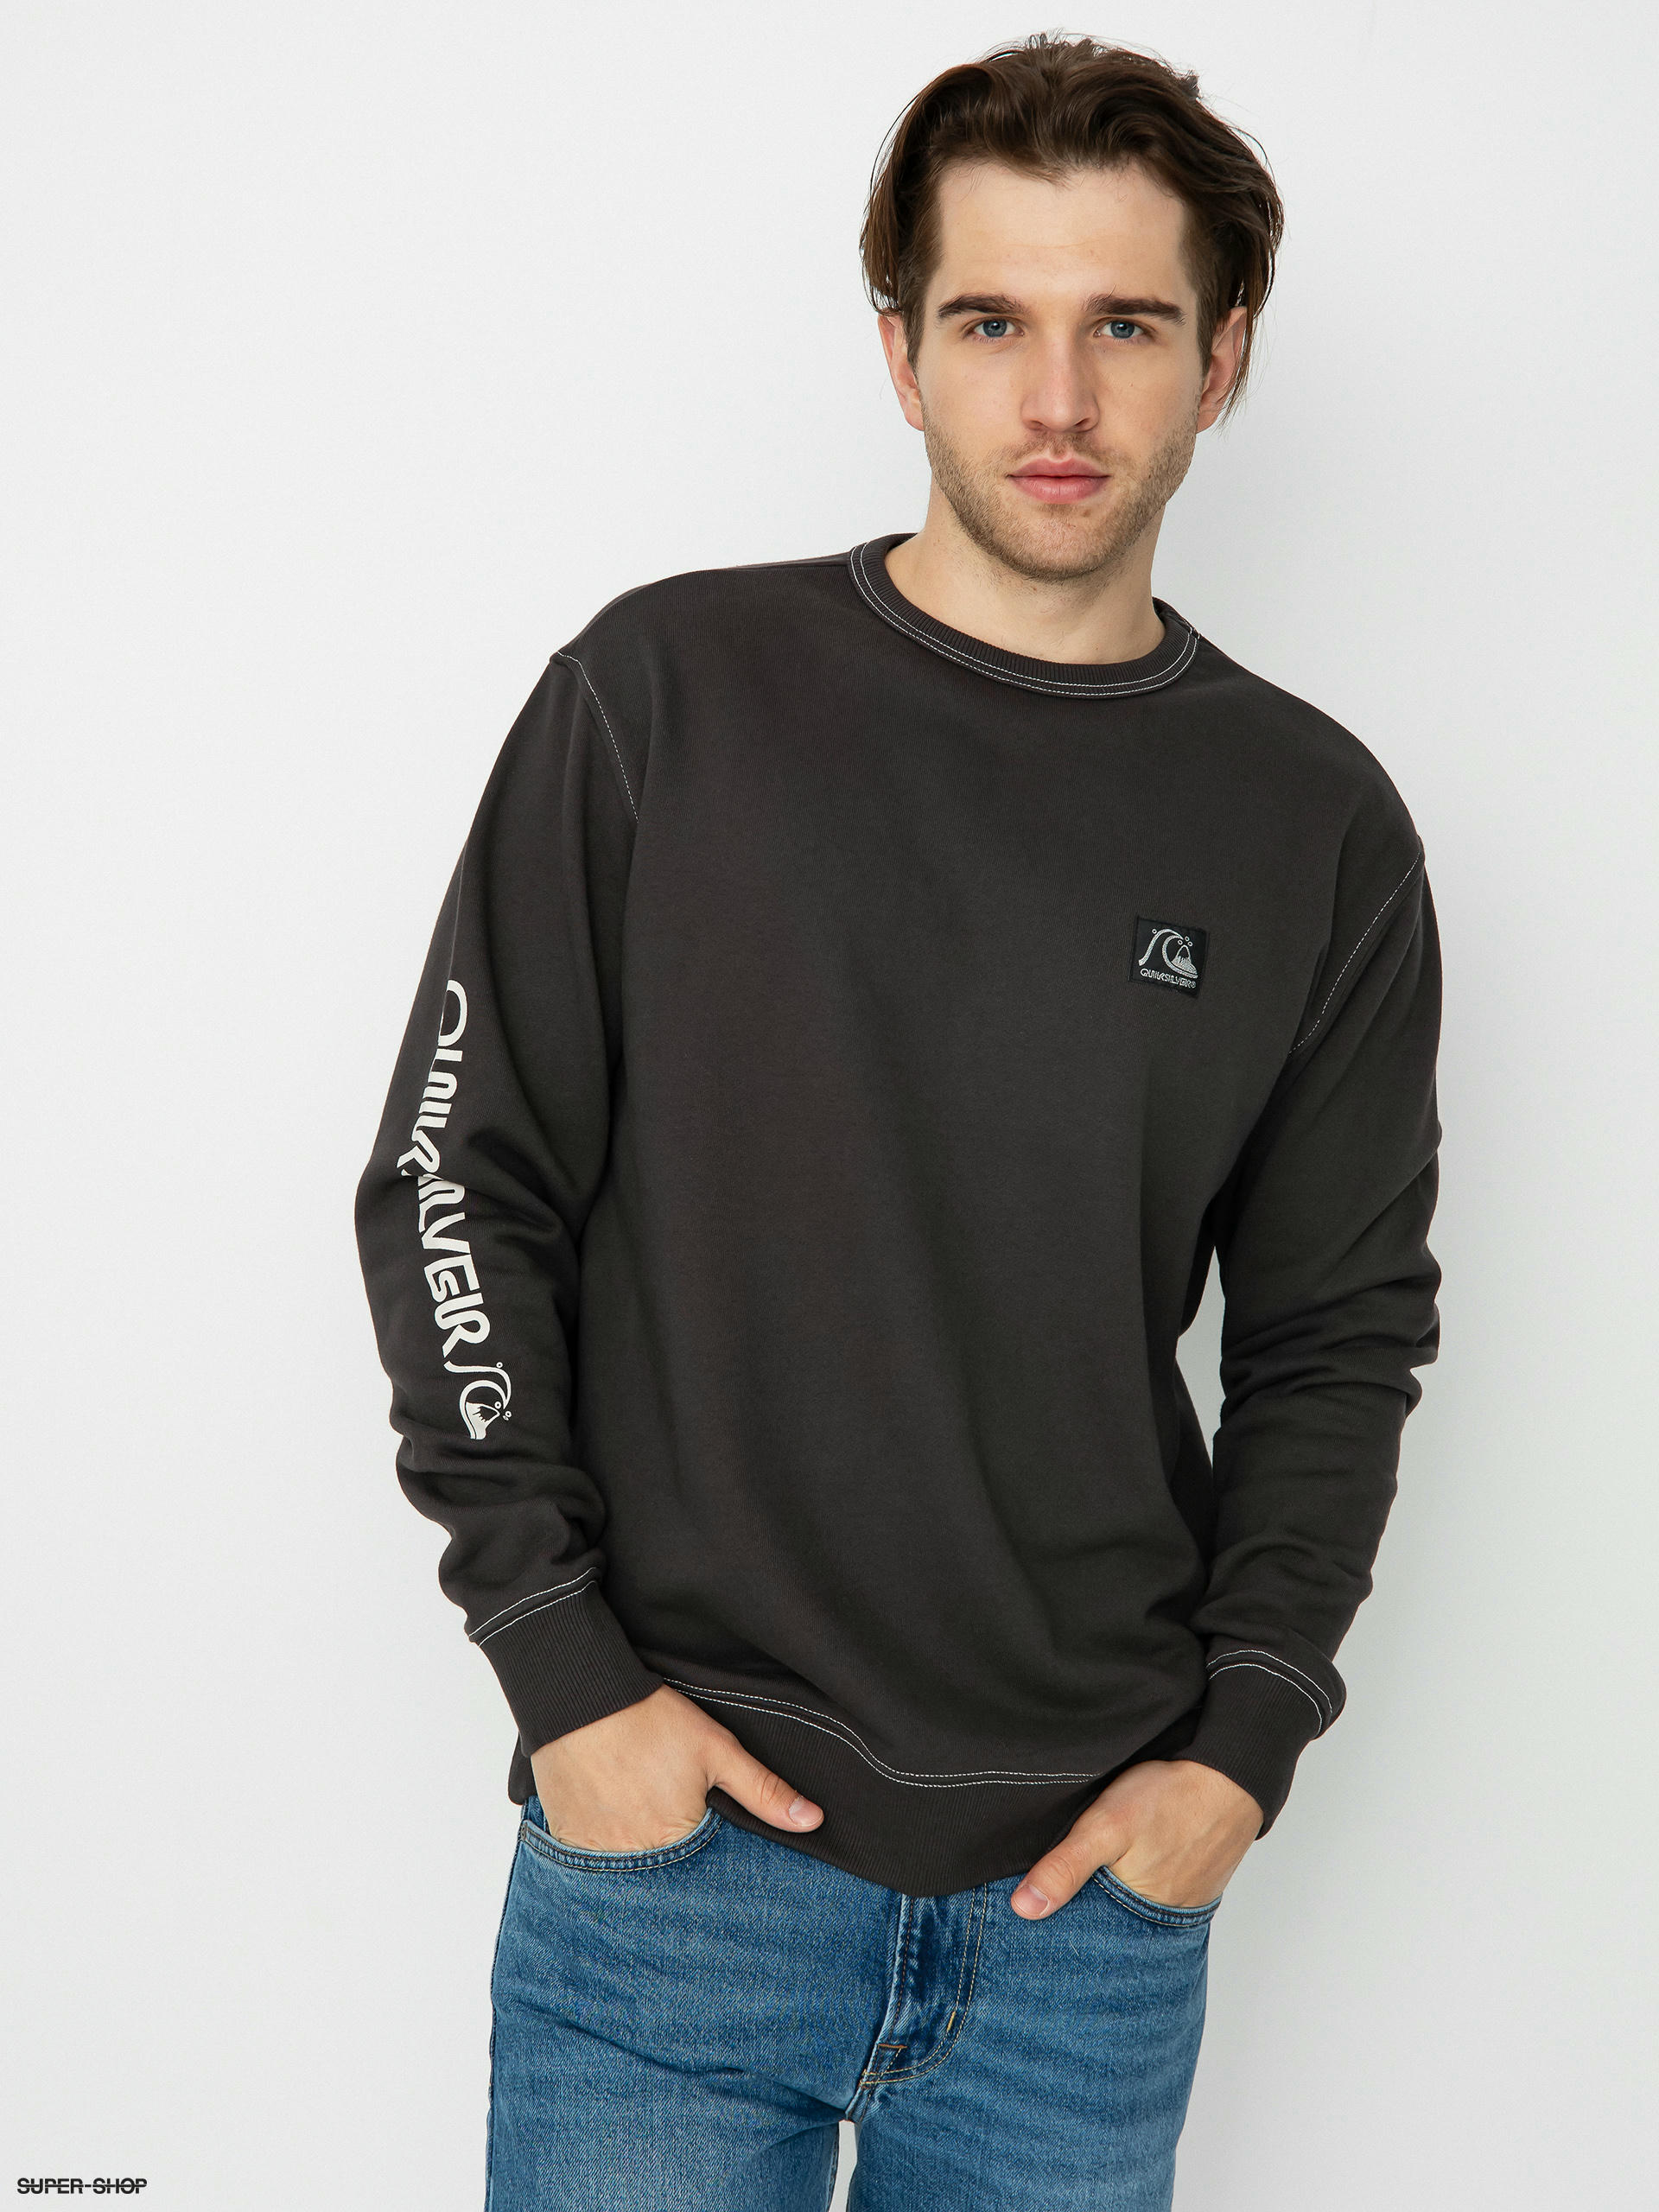 The Sweatshirt Original (black) Quiksilver